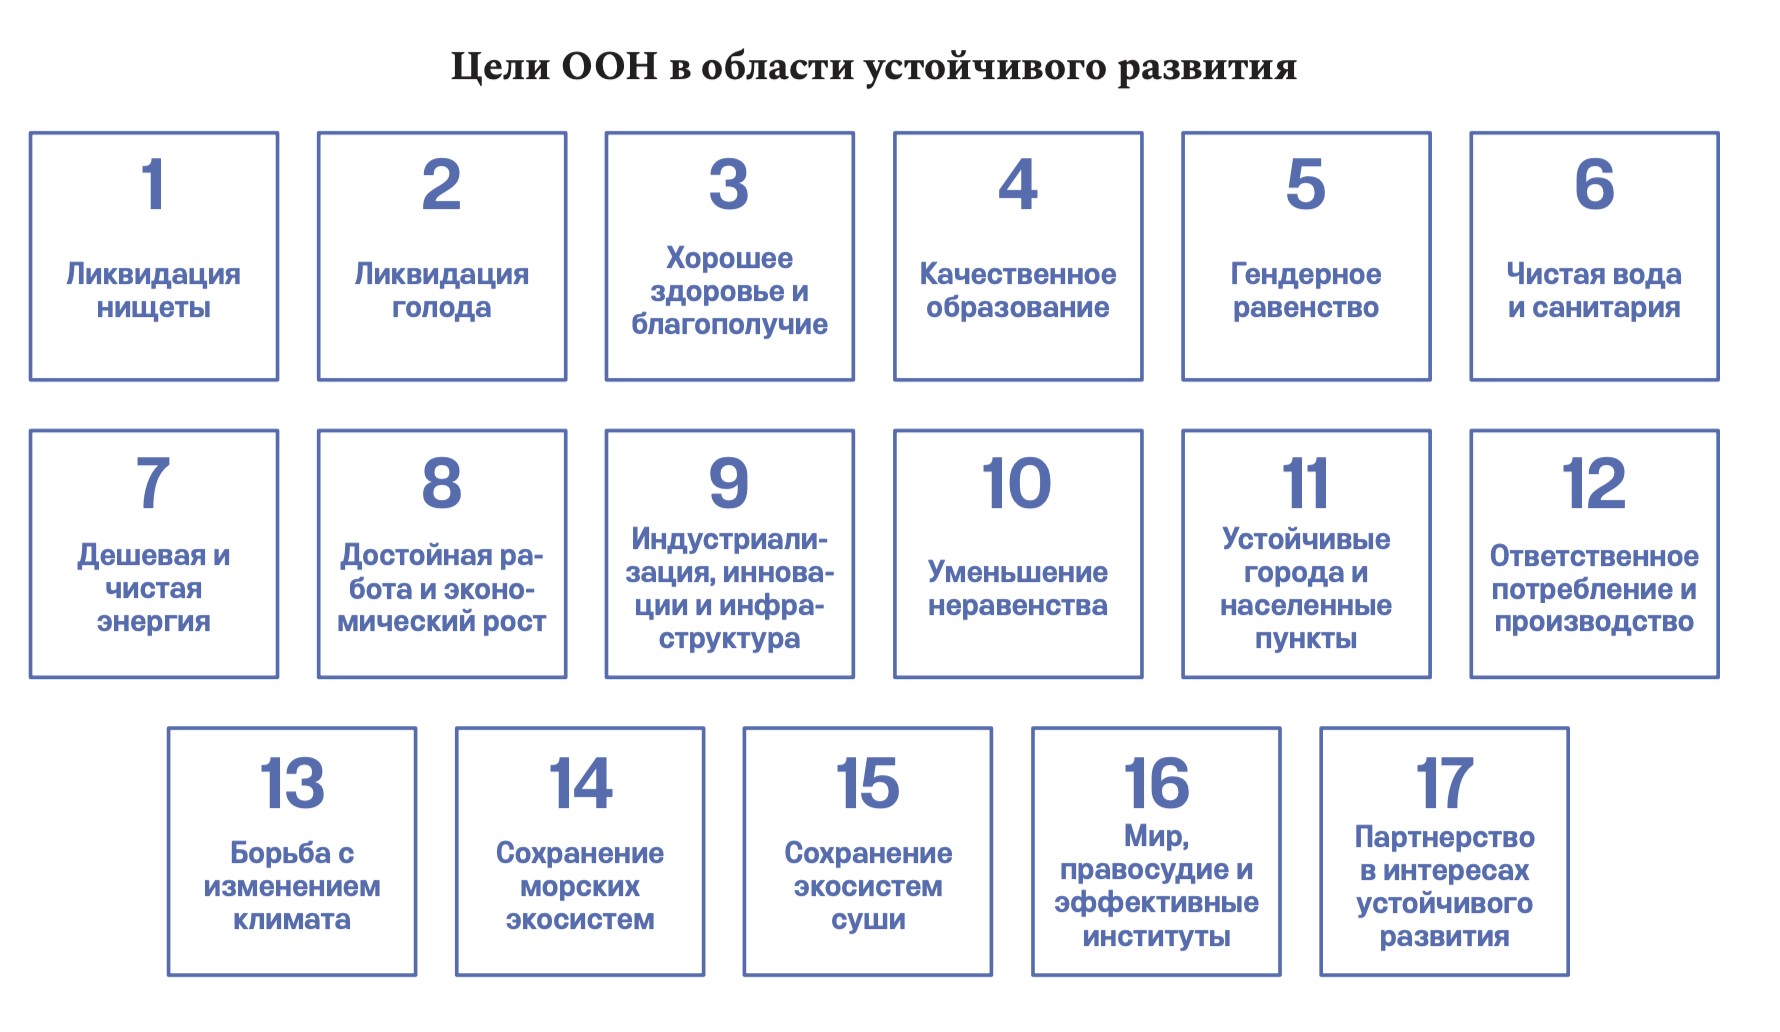 Концепция развития непрерывного образования взрослых в РФ